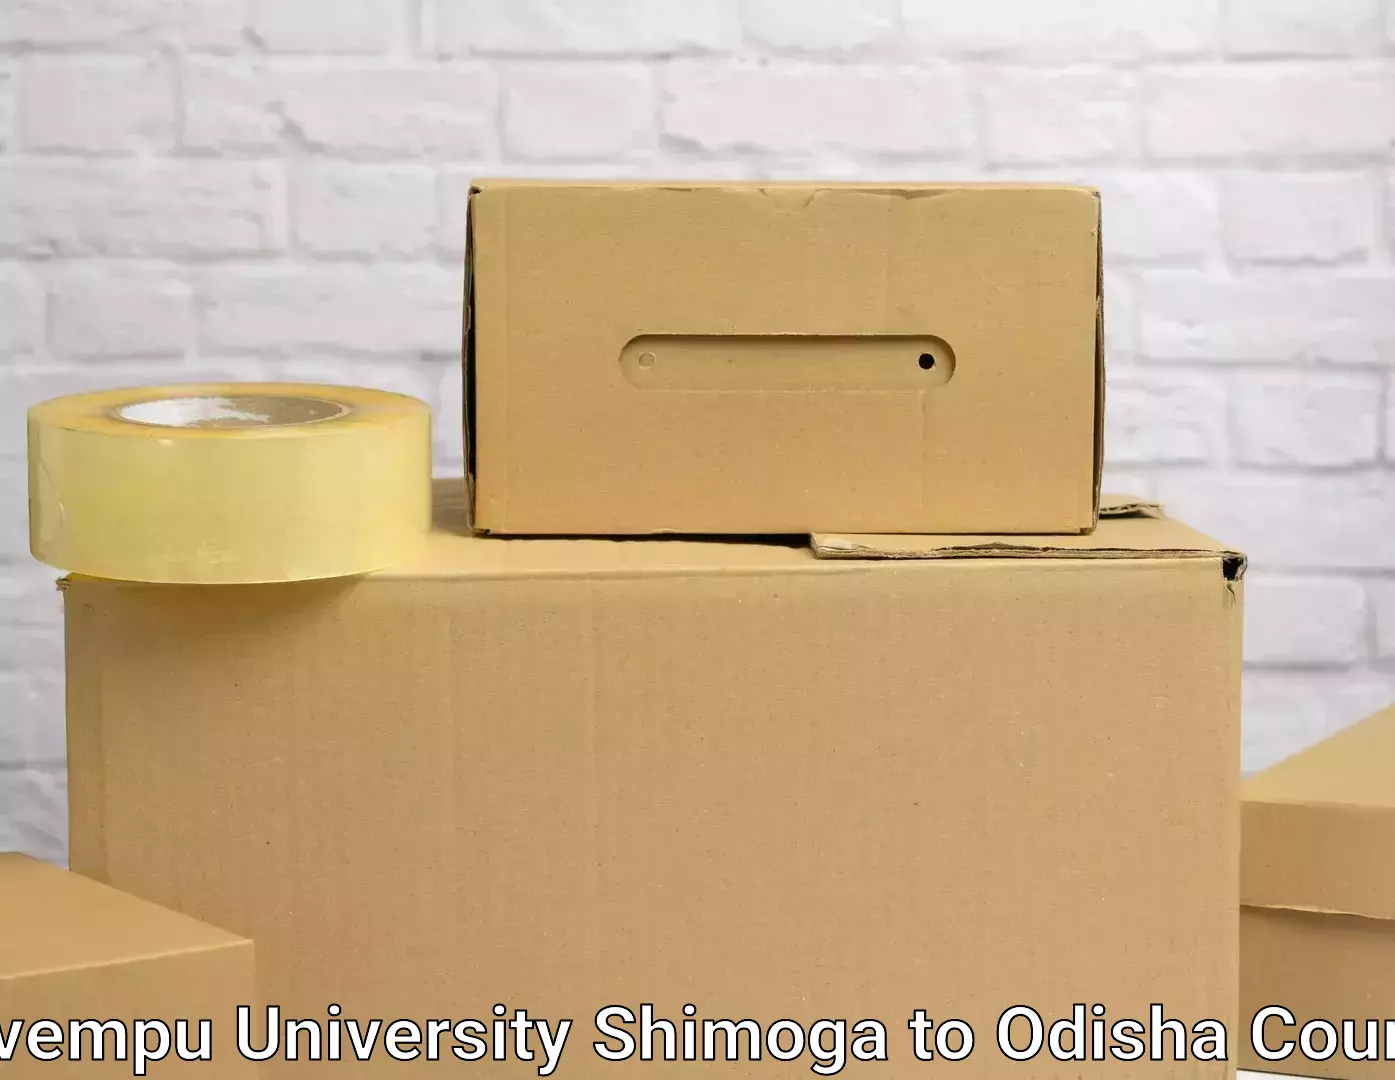 Nationwide furniture transport Kuvempu University Shimoga to Dunguripali